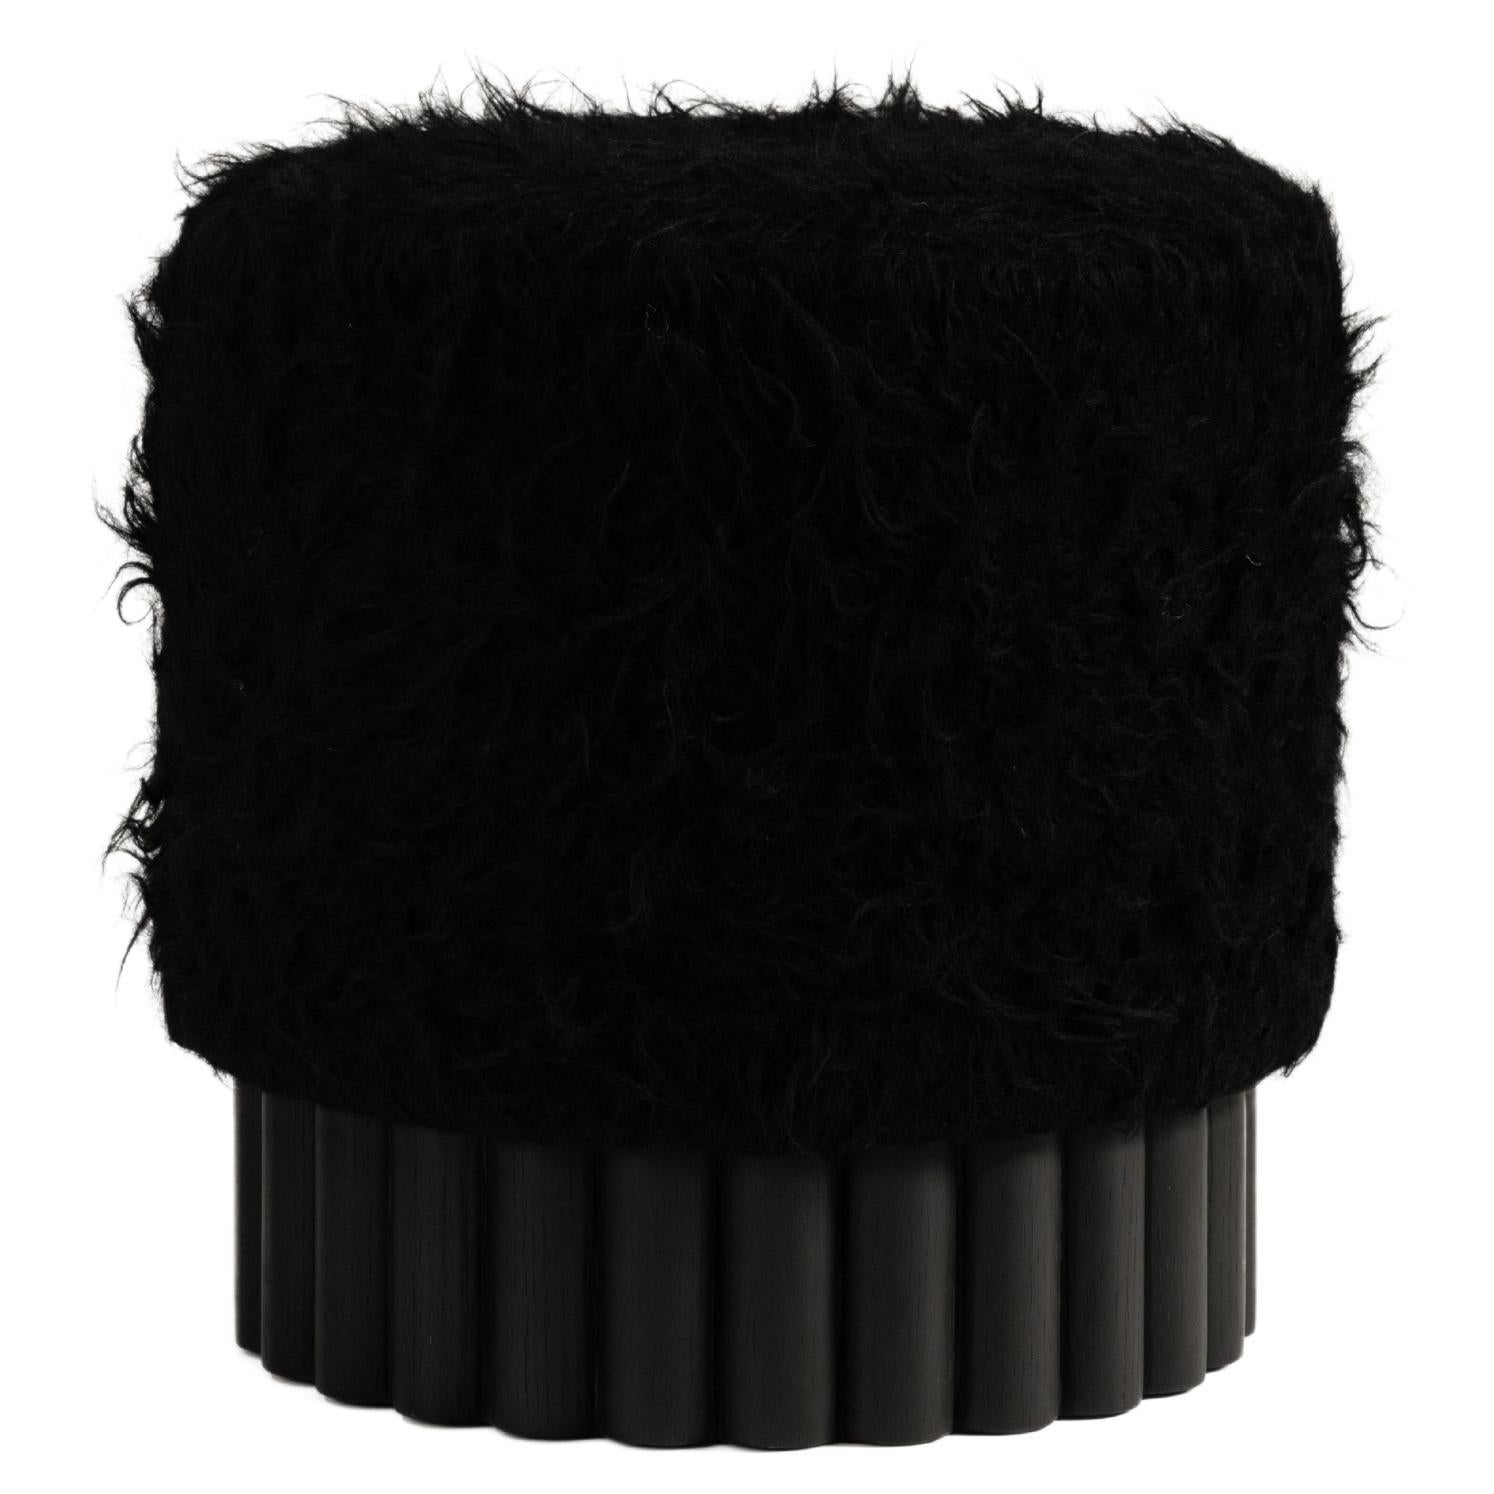 Loto Pouf in Black Shag Wool by Peca